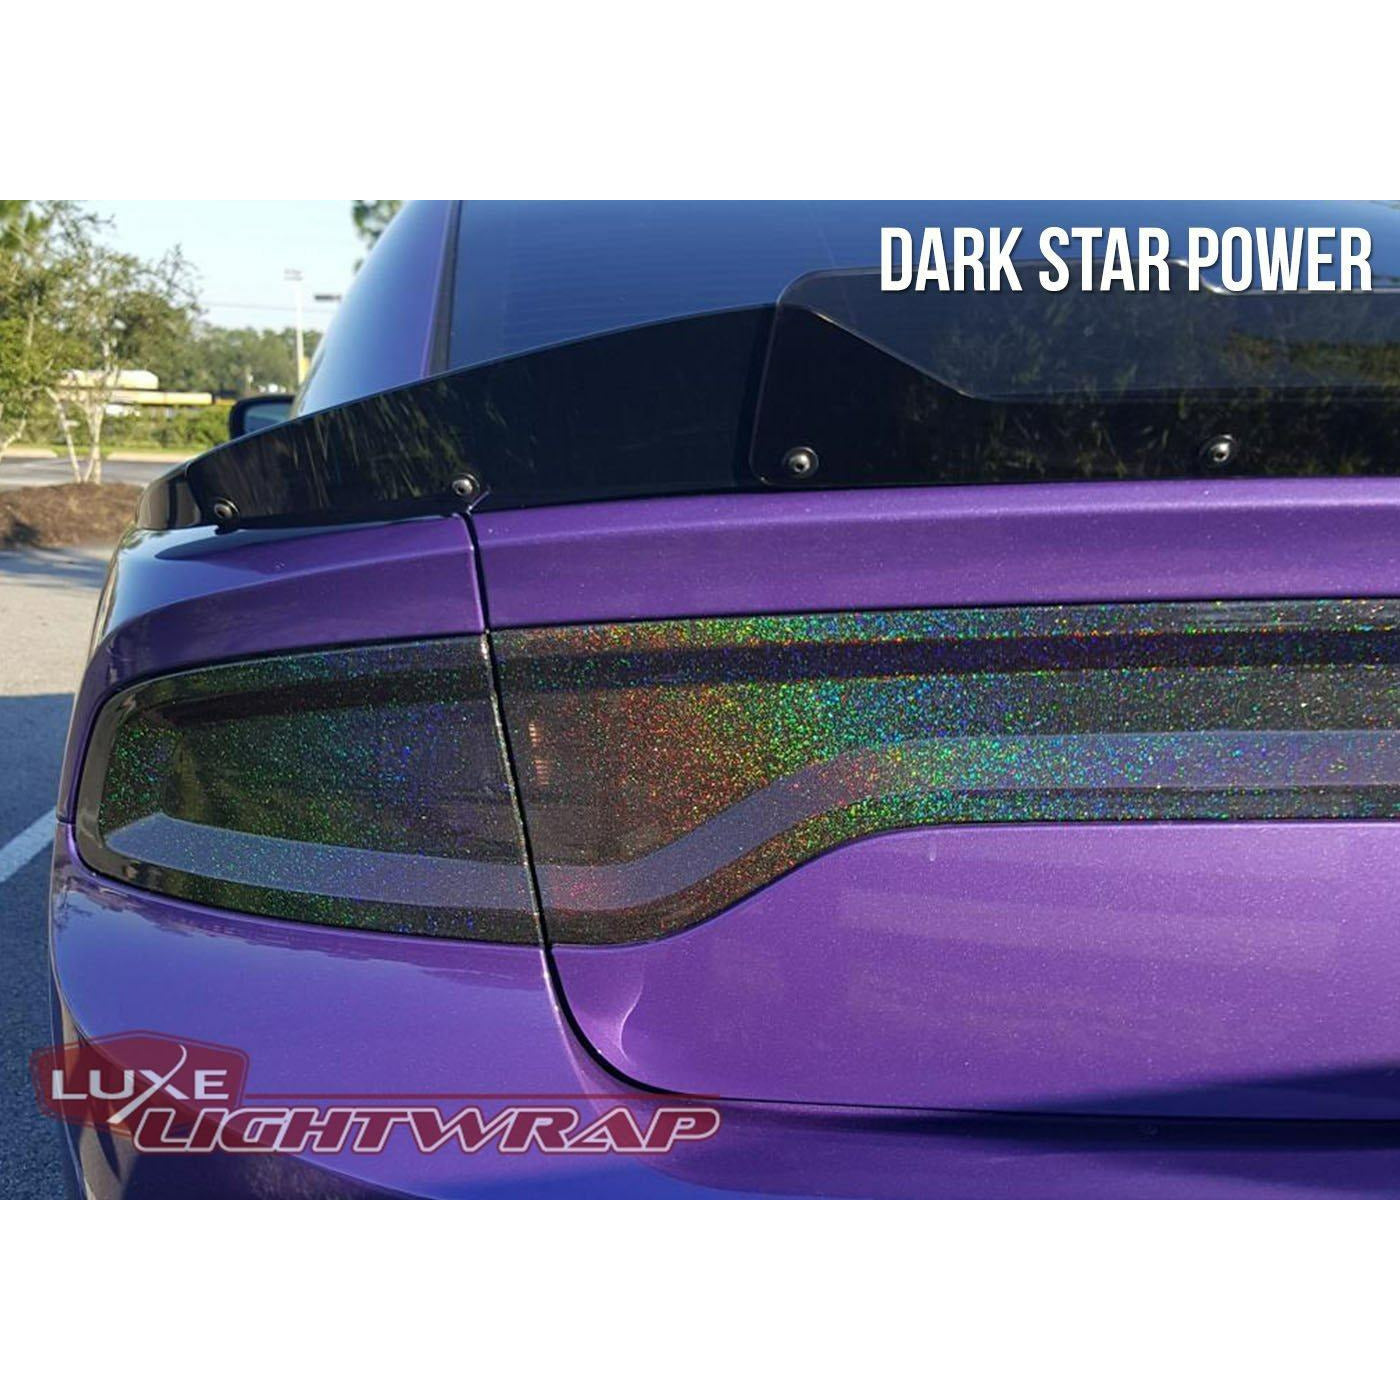 Luxe LightWrap - FX Dark Star Power - LightWrap